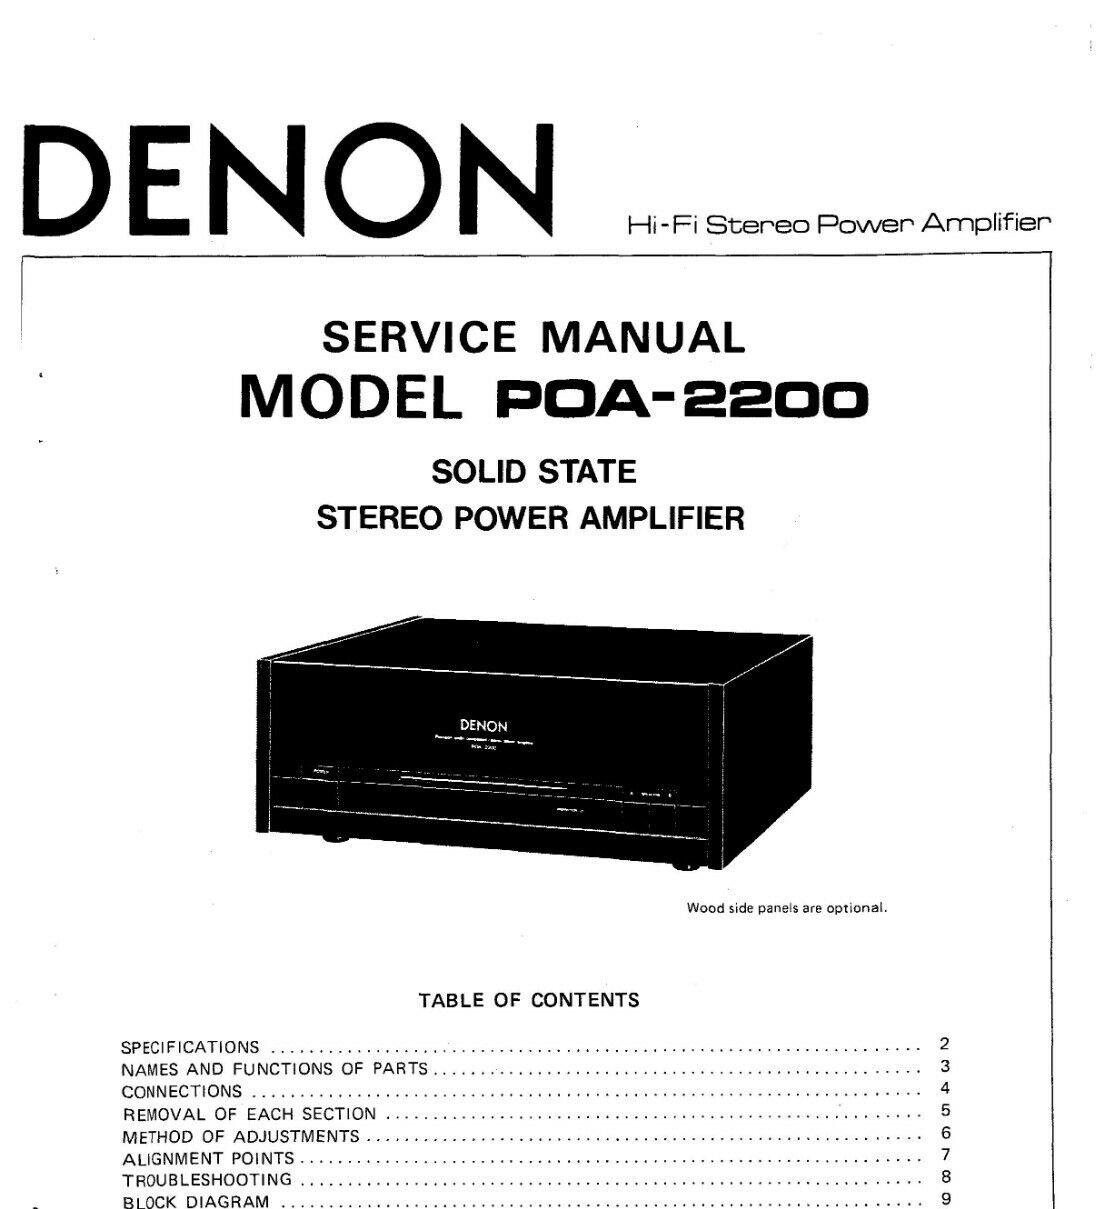 Denon Poa-2200 Service Manual PDF